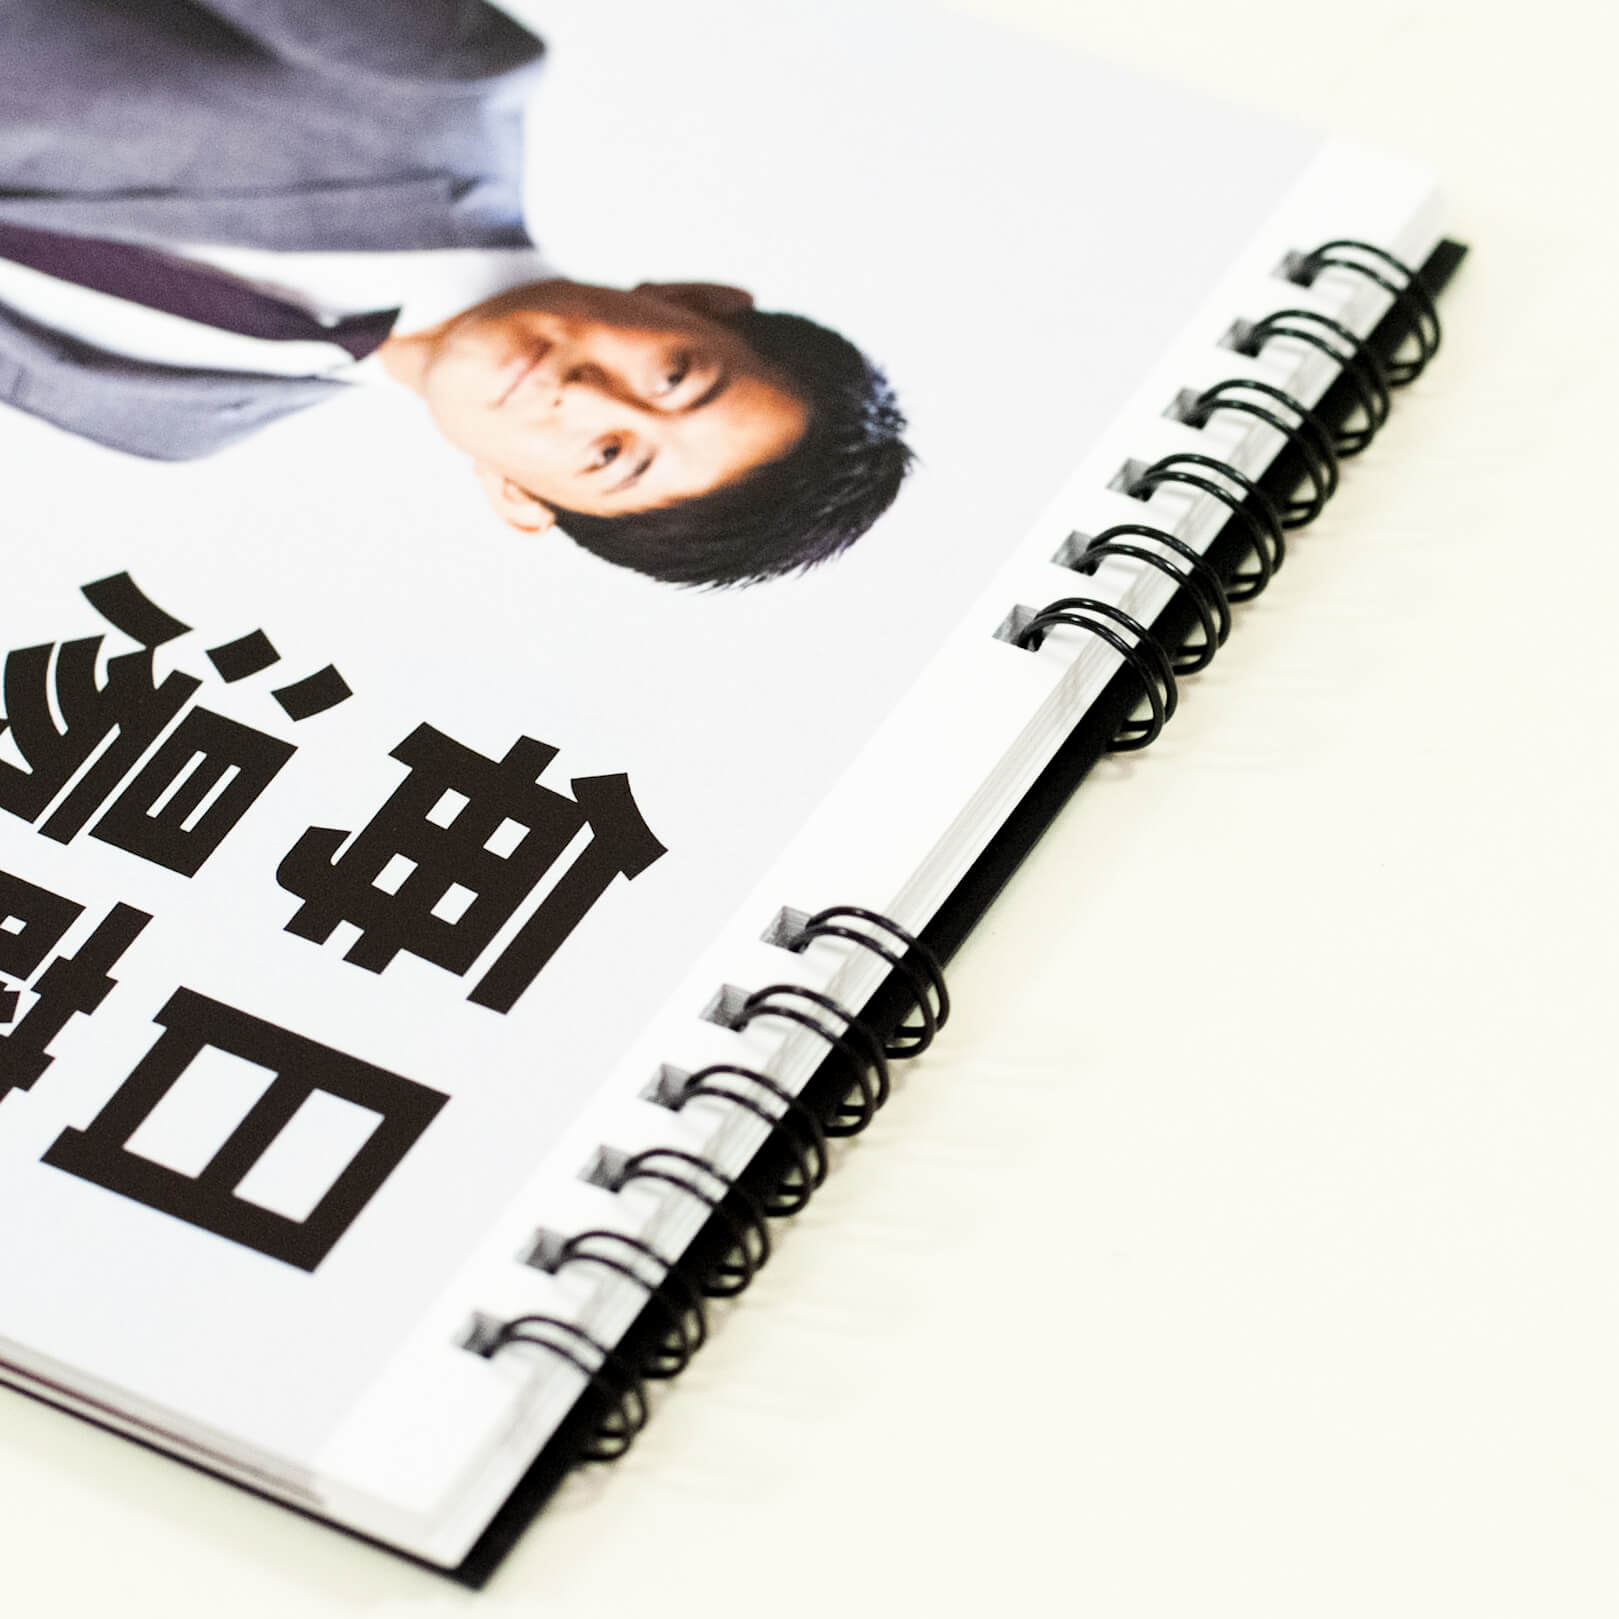 「株式会社シーラ 様」製作のオリジナルカレンダー ギャラリー写真3